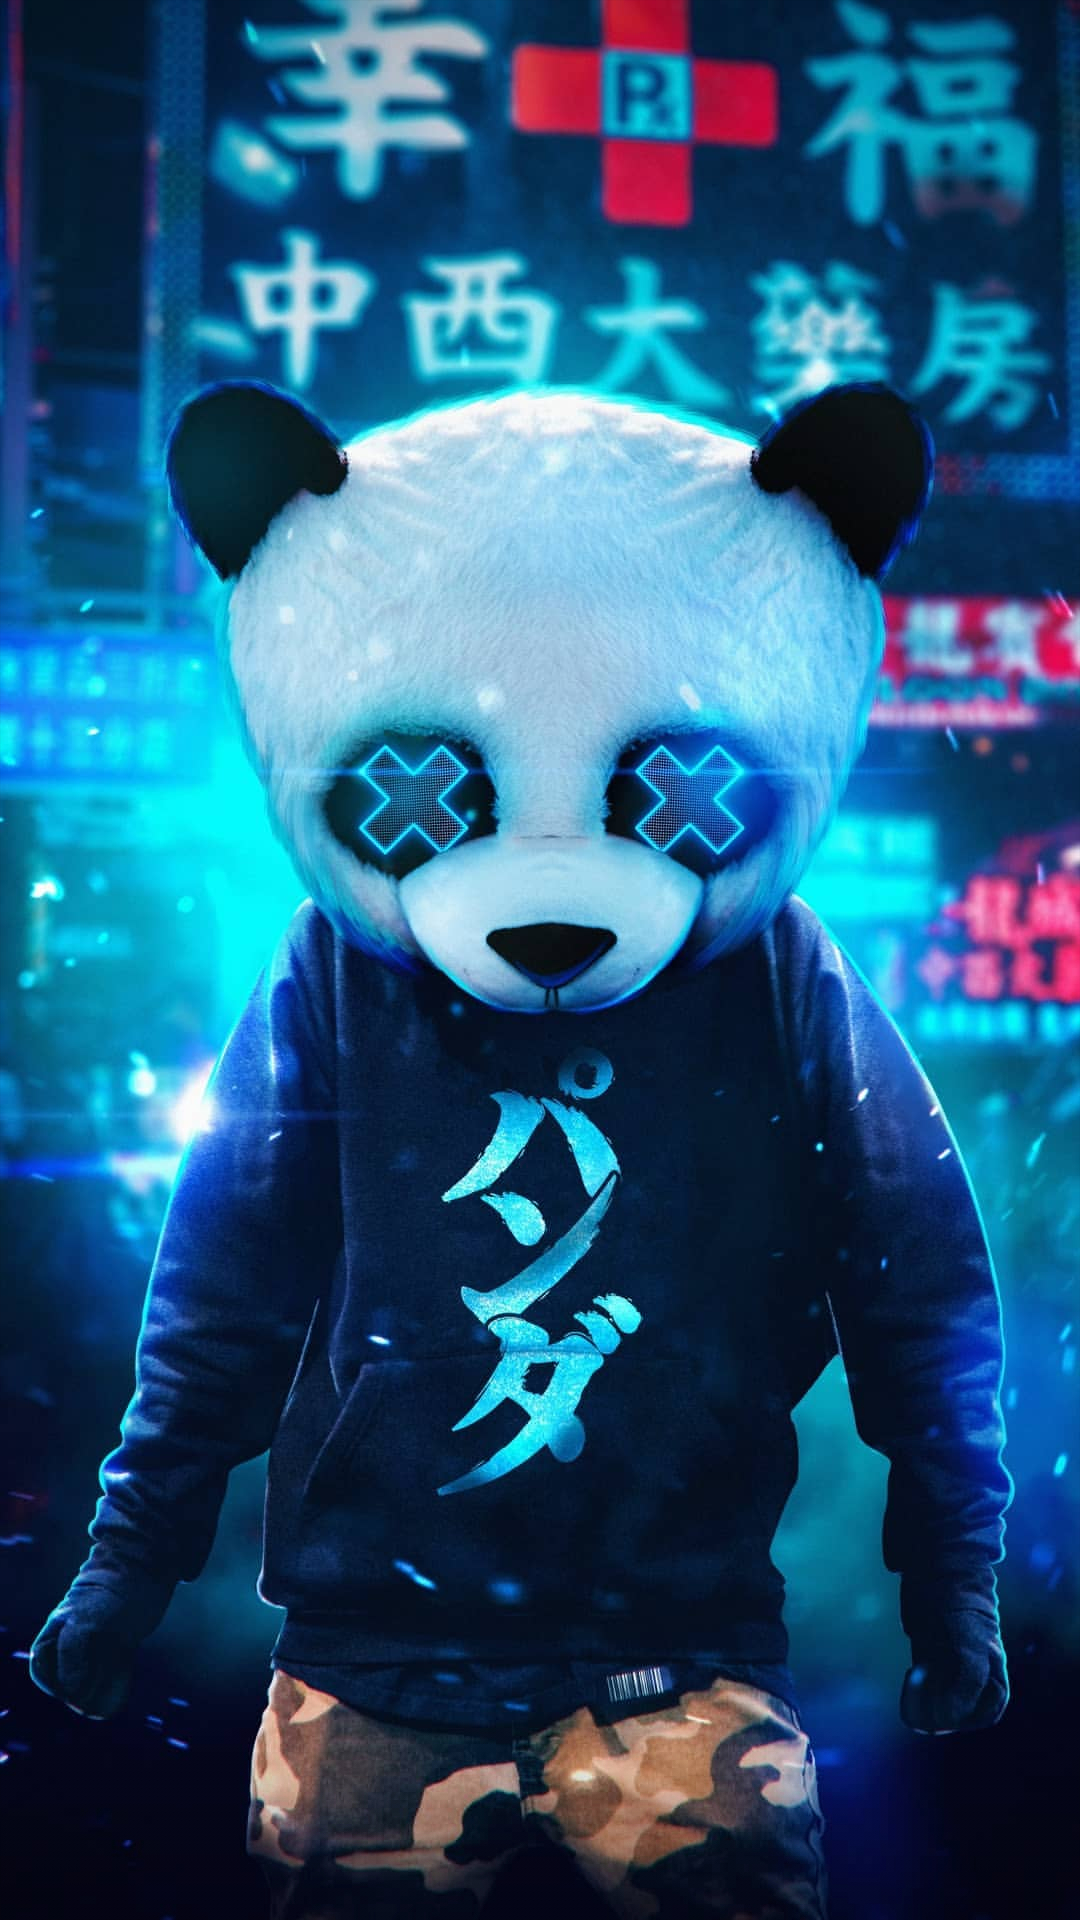 Cute panda wallpaperco.com